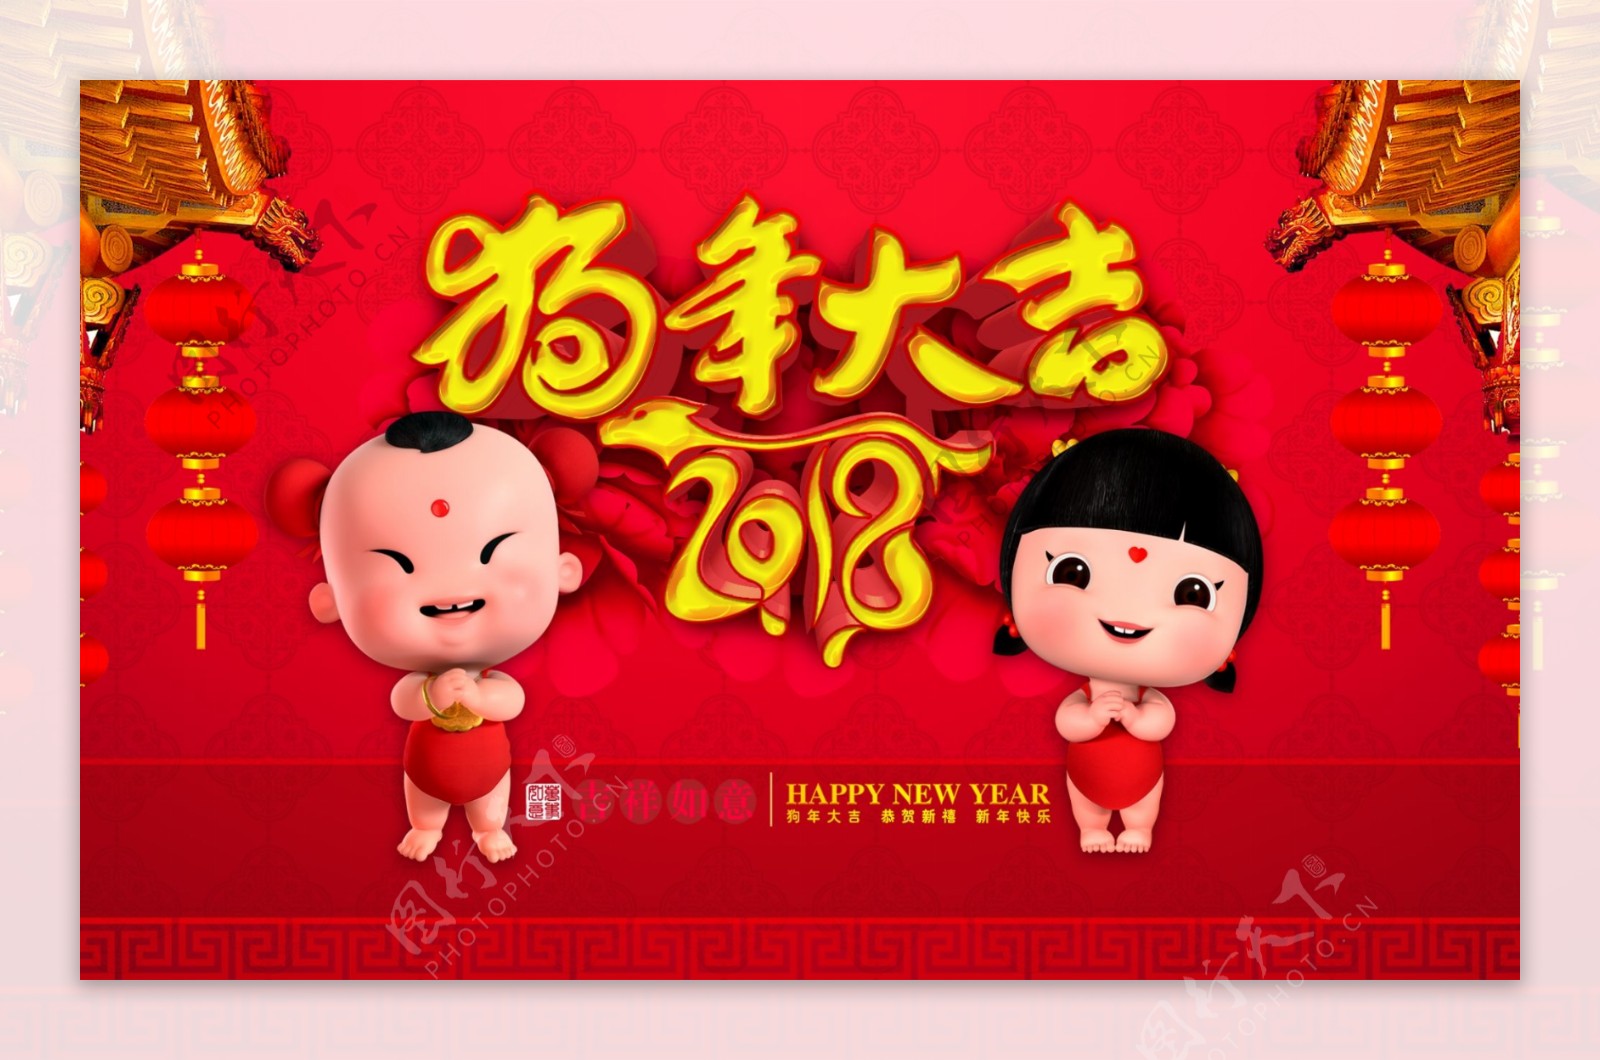 2018新春红色拜年喜庆促销喷绘海报设计